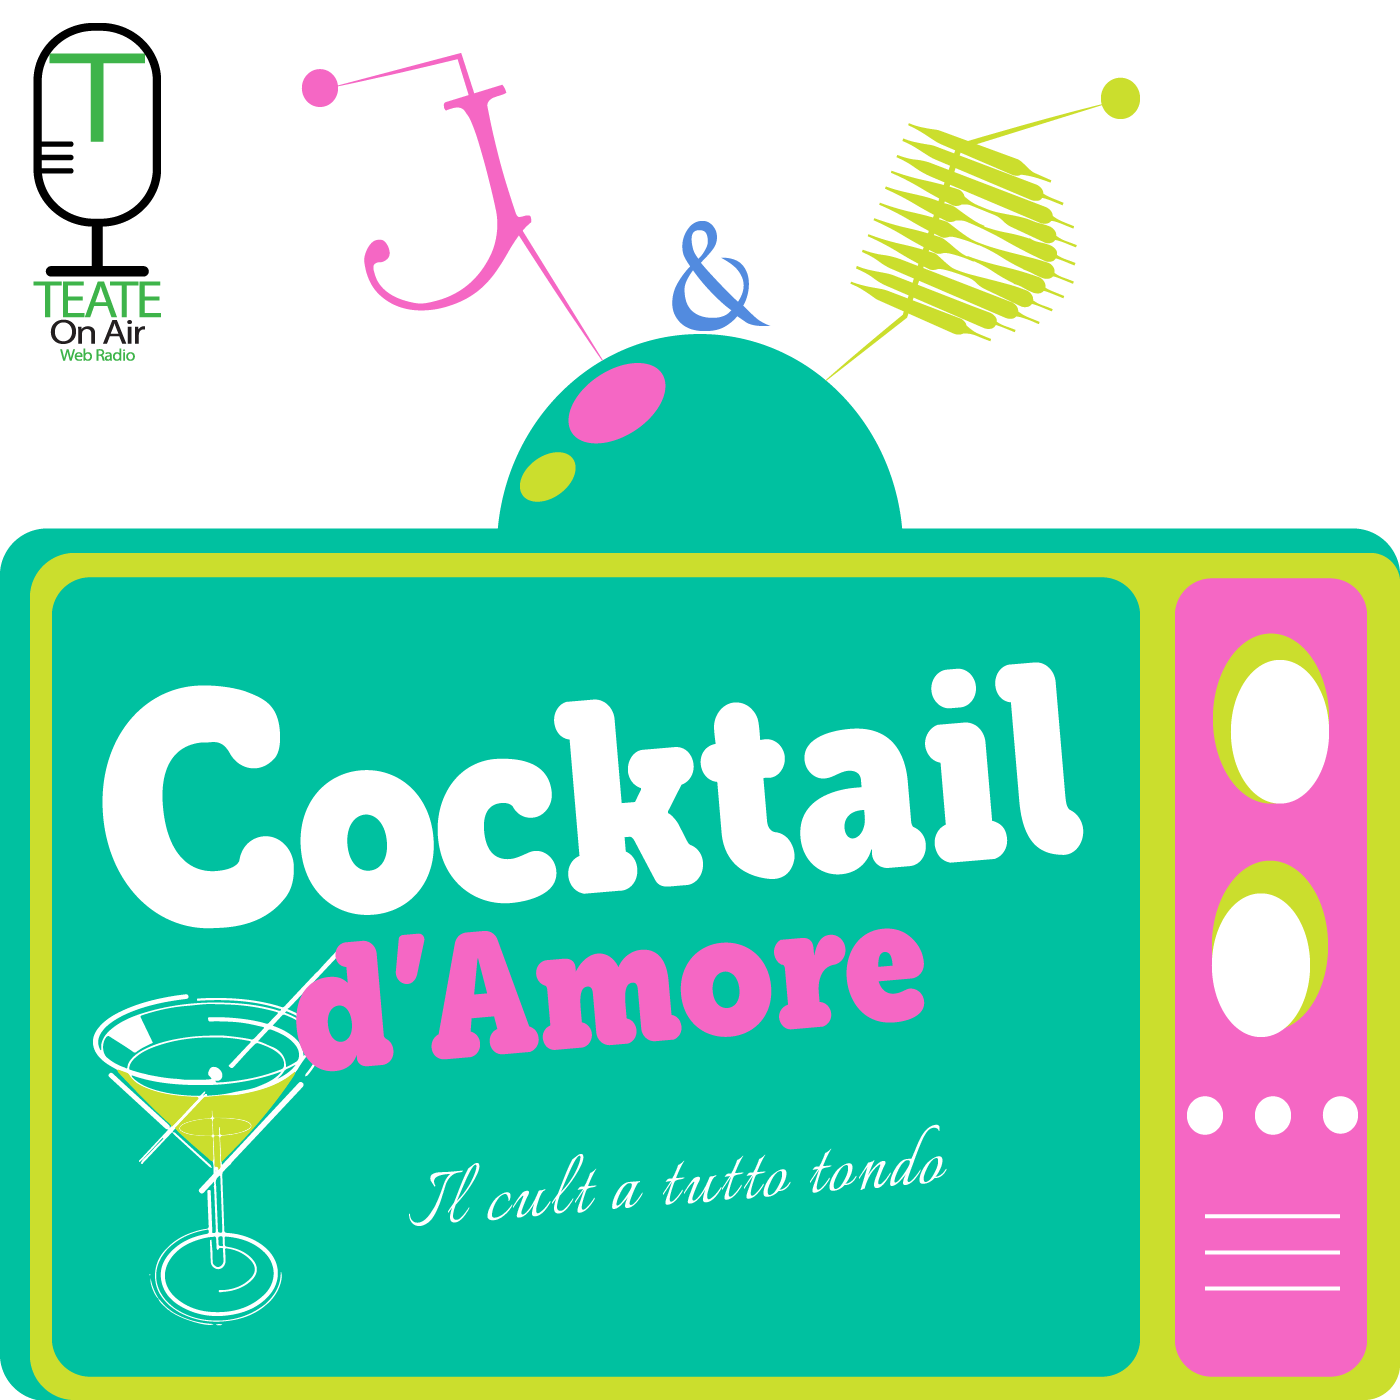 Copertina di "Cocktail d'Amore" + Logo ToA